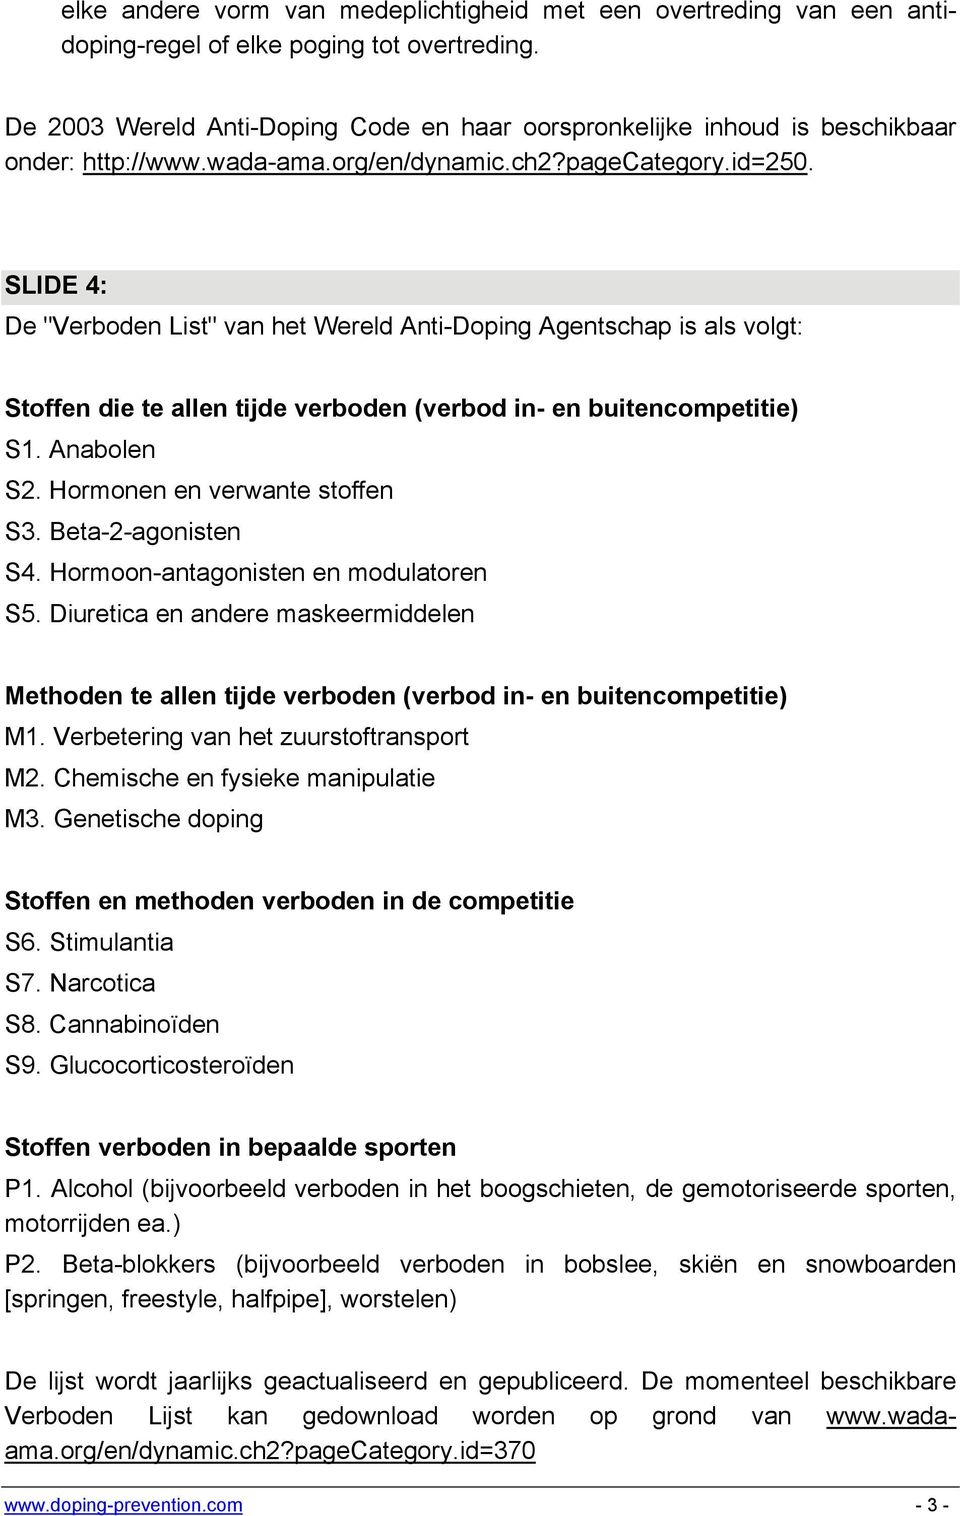 SLIDE 4: De "Verboden List" van het Wereld Anti-Doping Agentschap is als volgt: Stoffen die te allen tijde verboden (verbod in- en buitencompetitie) S1. Anabolen S2. Hormonen en verwante stoffen S3.